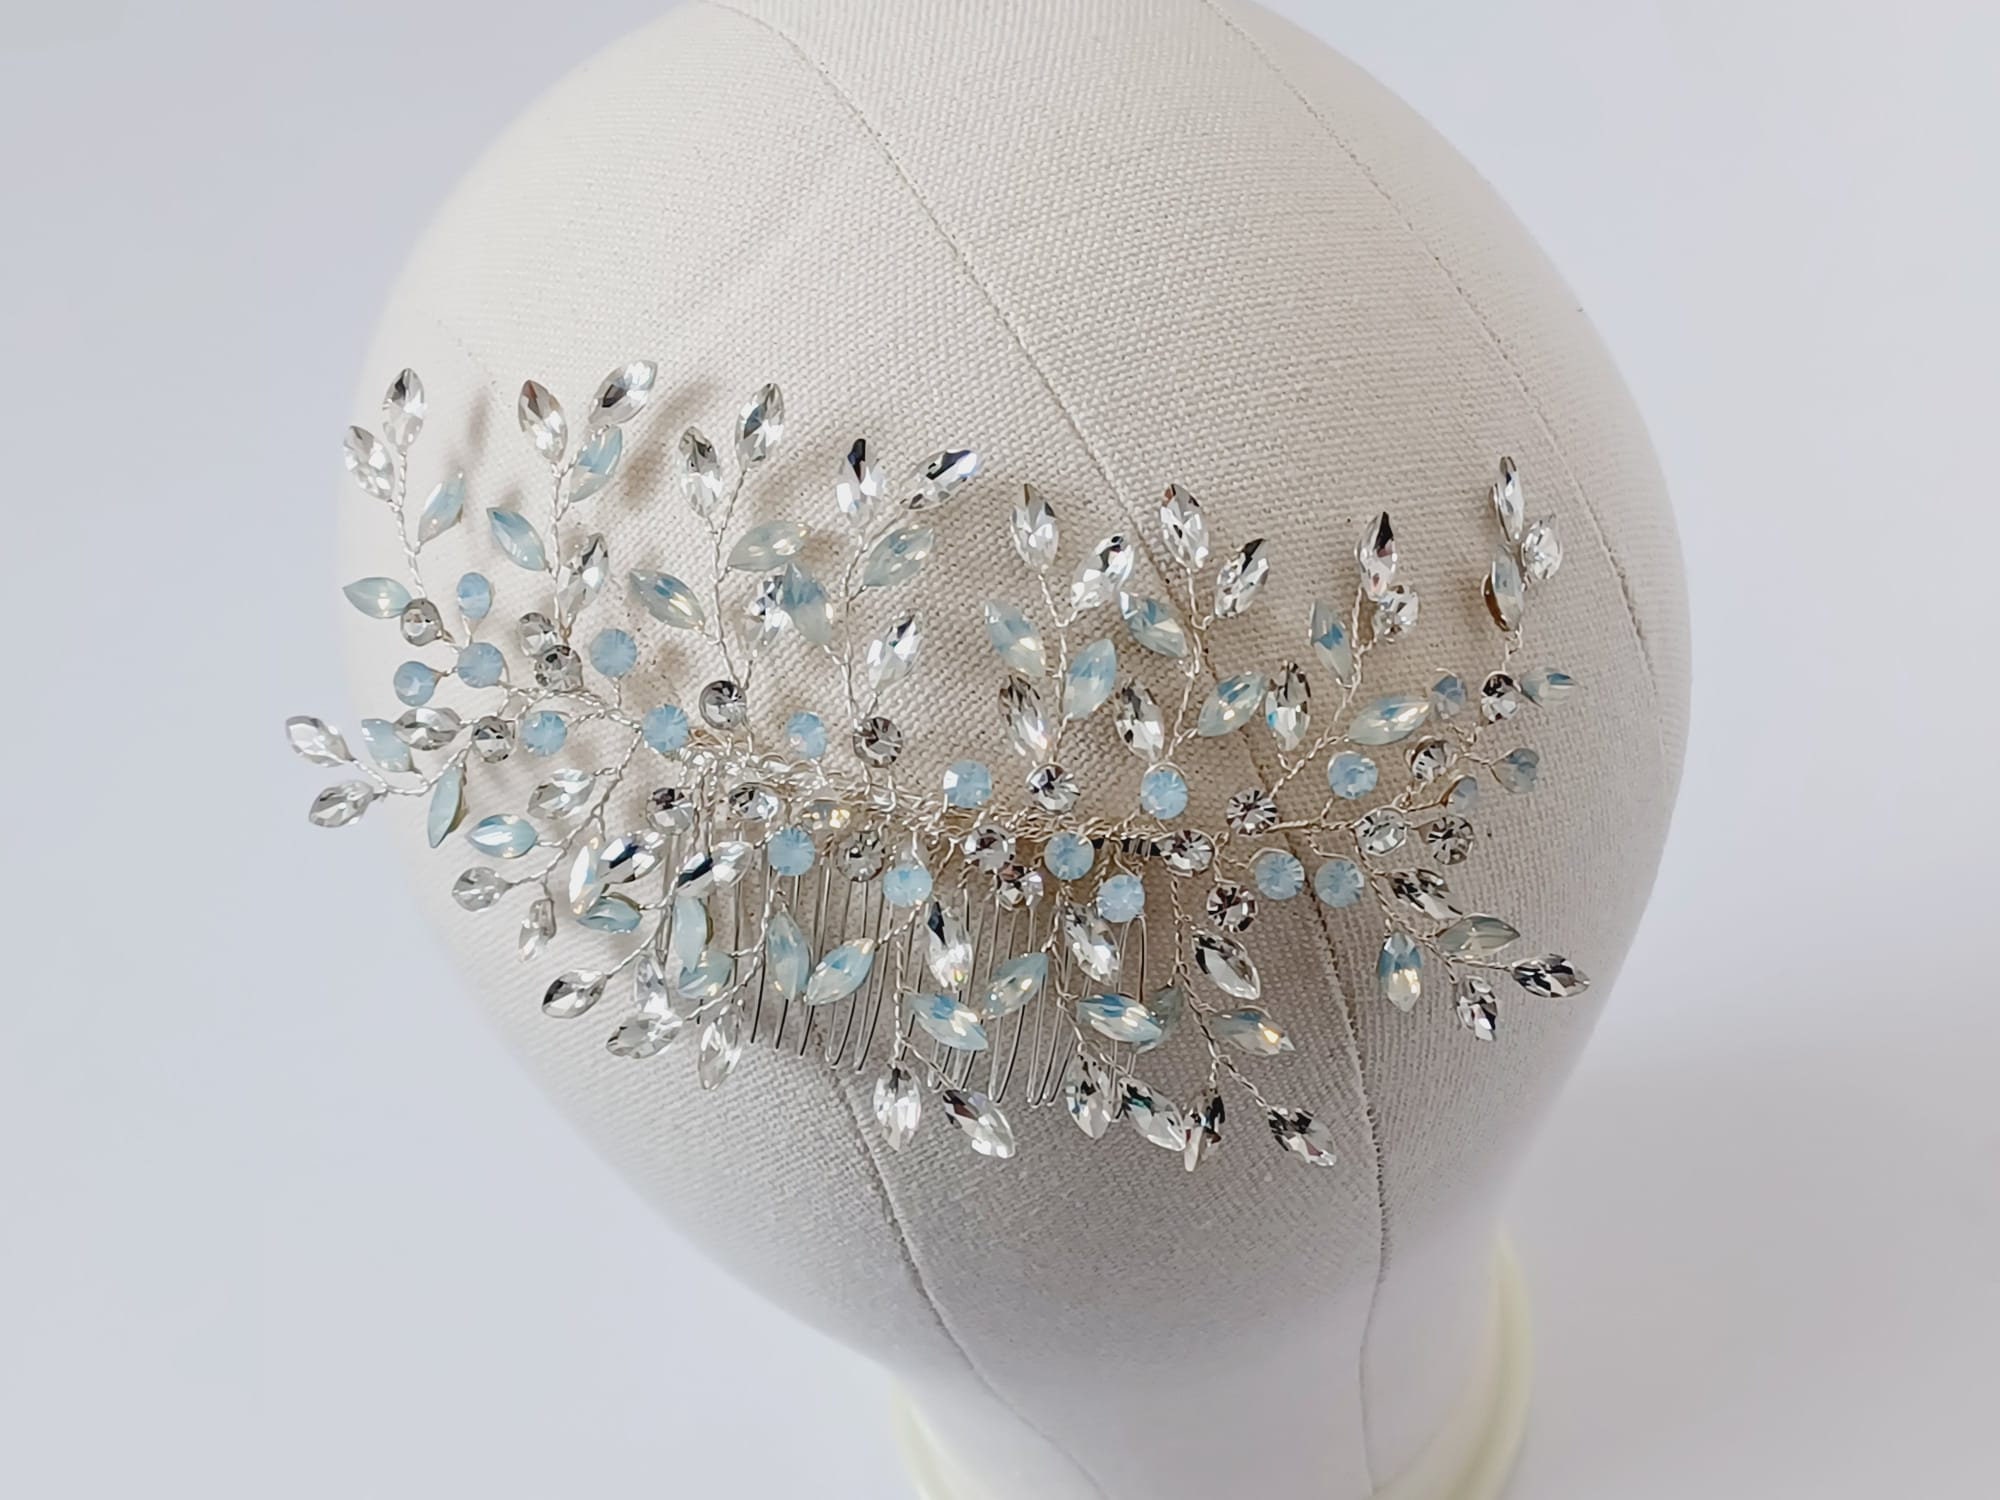 Bridal High Quality Glass Pearl Hair Pins Set of 7 Wedding Hair